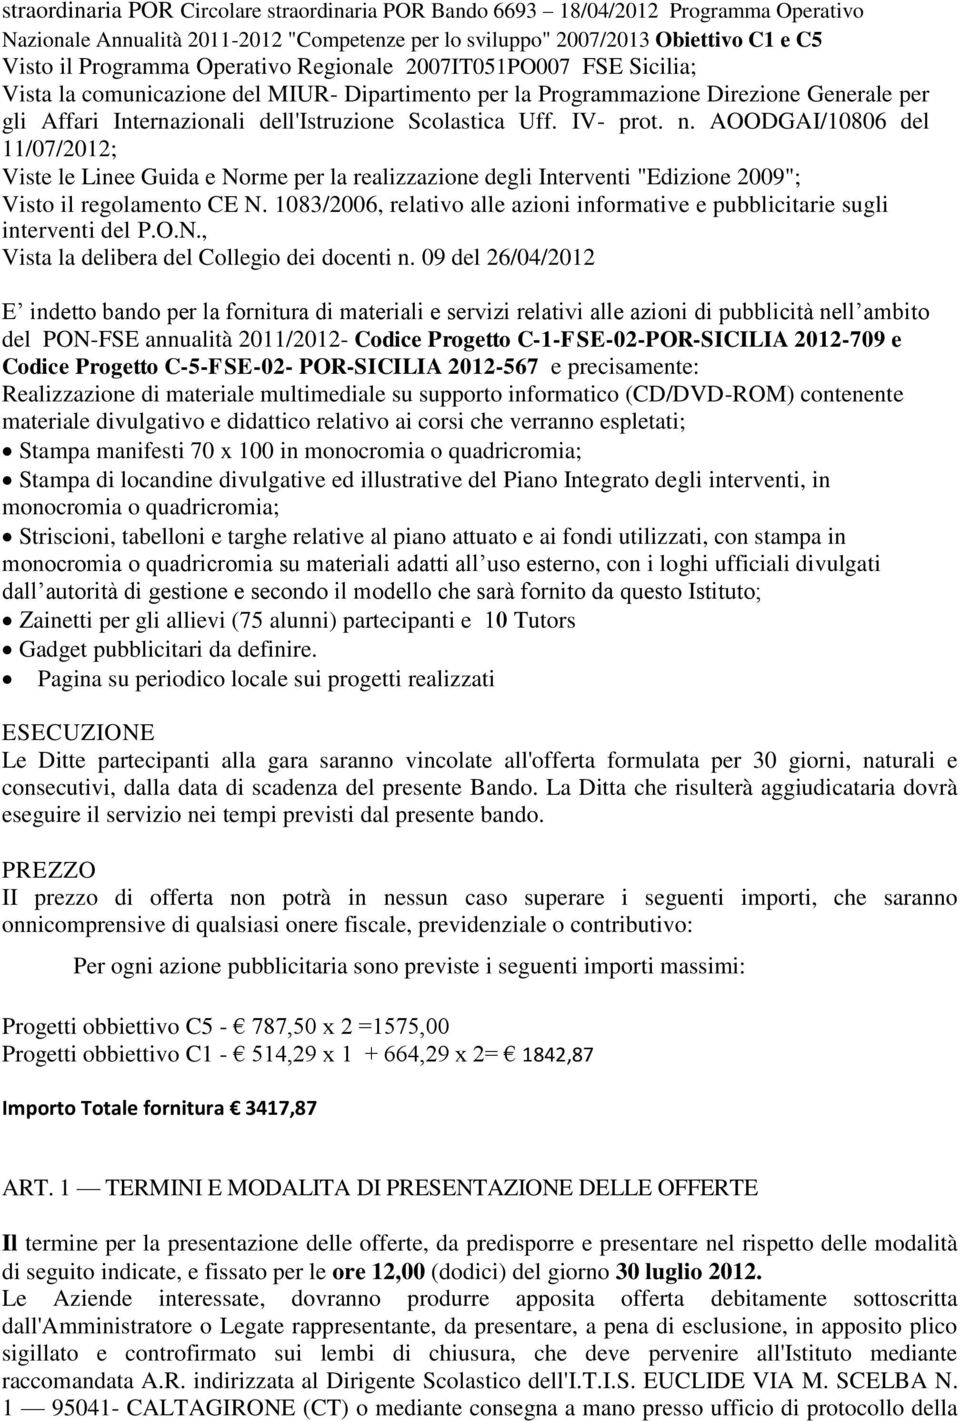 IV- prot. n. AOODGAI/10806 del 11/07/2012; Viste le Linee Guida e Norme per la realizzazione degli Interventi "Edizione 2009"; Visto il regolamento CE N.